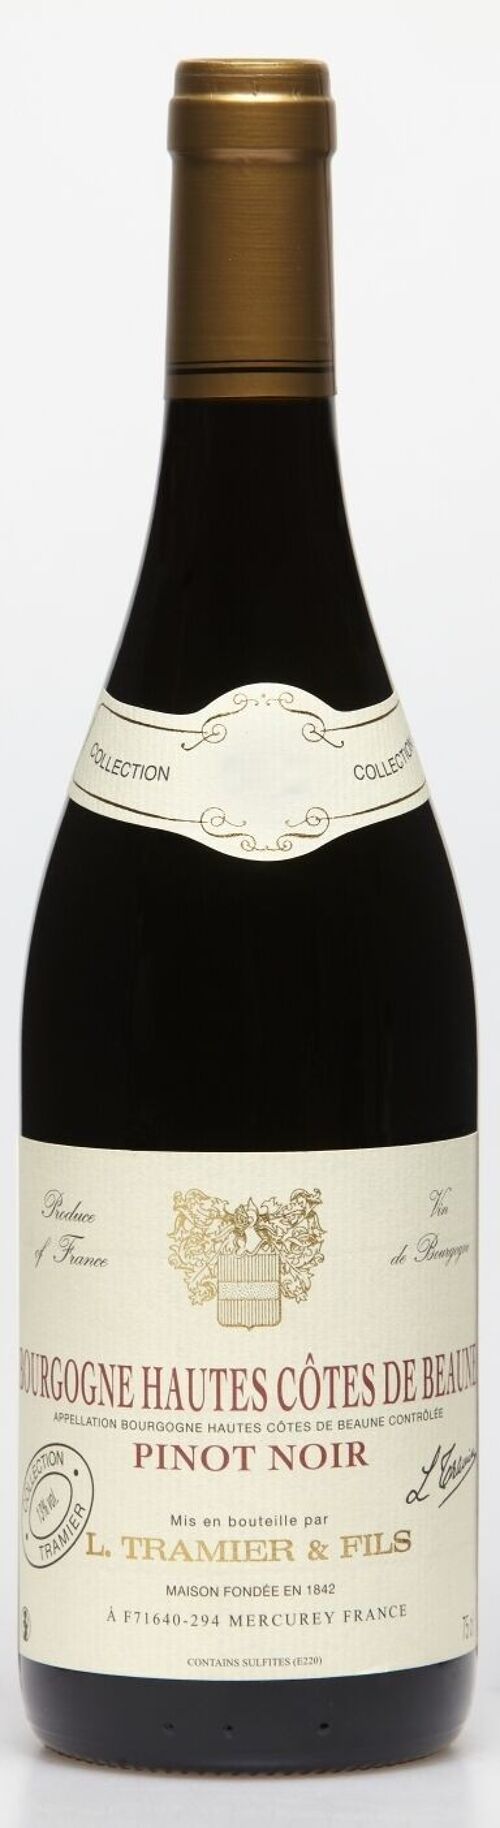 Bourgogne Hautes Côtes de Beaune - Pinot Noir - Vin Rouge - 75cl (Bourgogne)